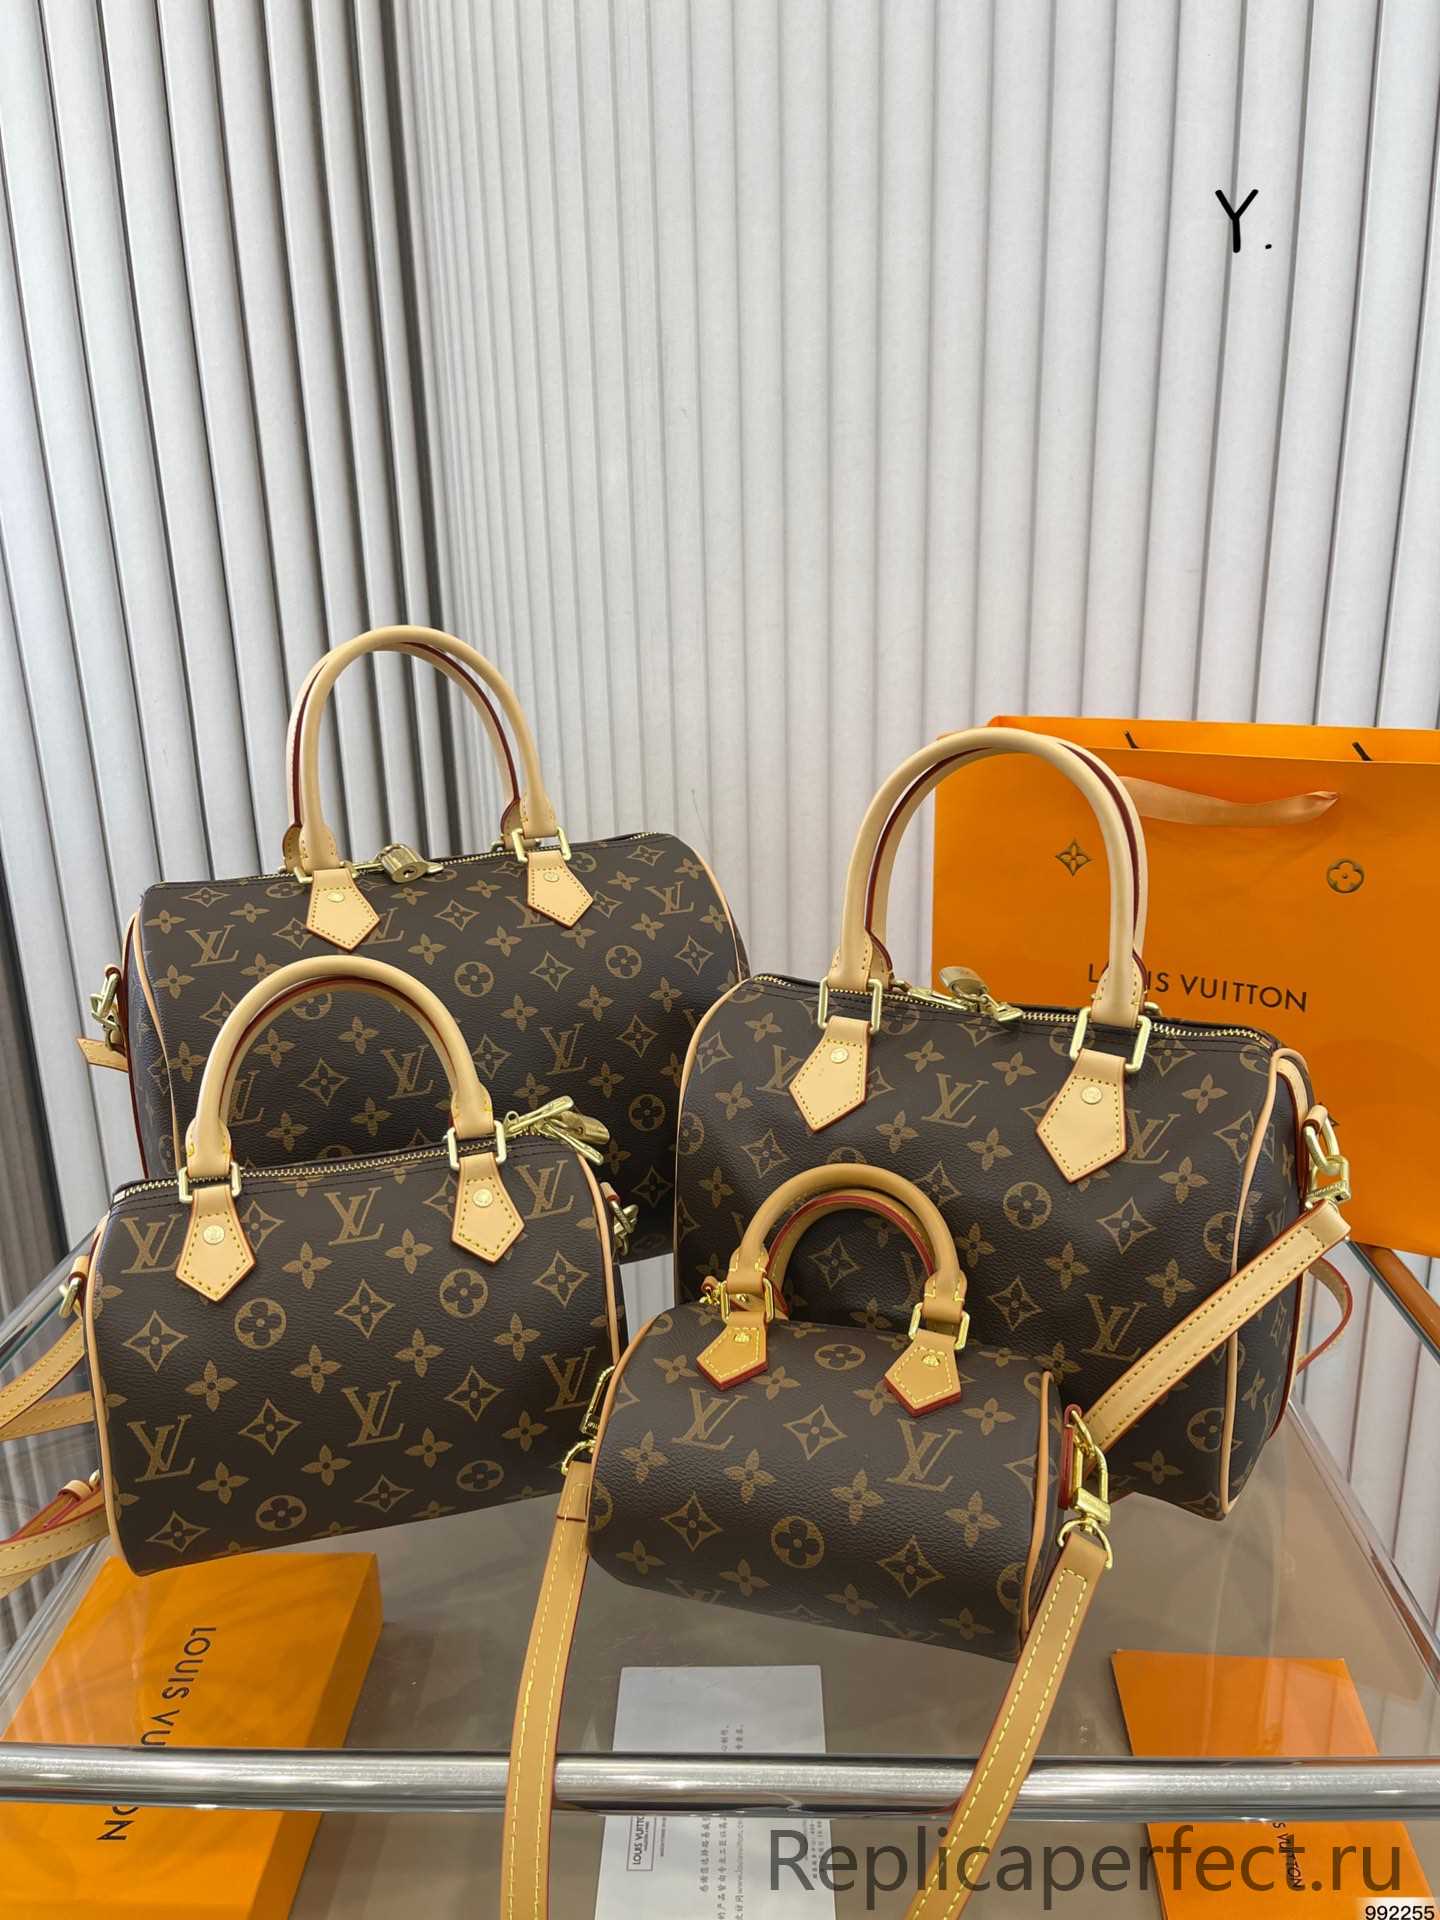 7 Star Louis Vuitton LV Speedy Bags Handbags 1:1 Clone - Replicaperfect.ru